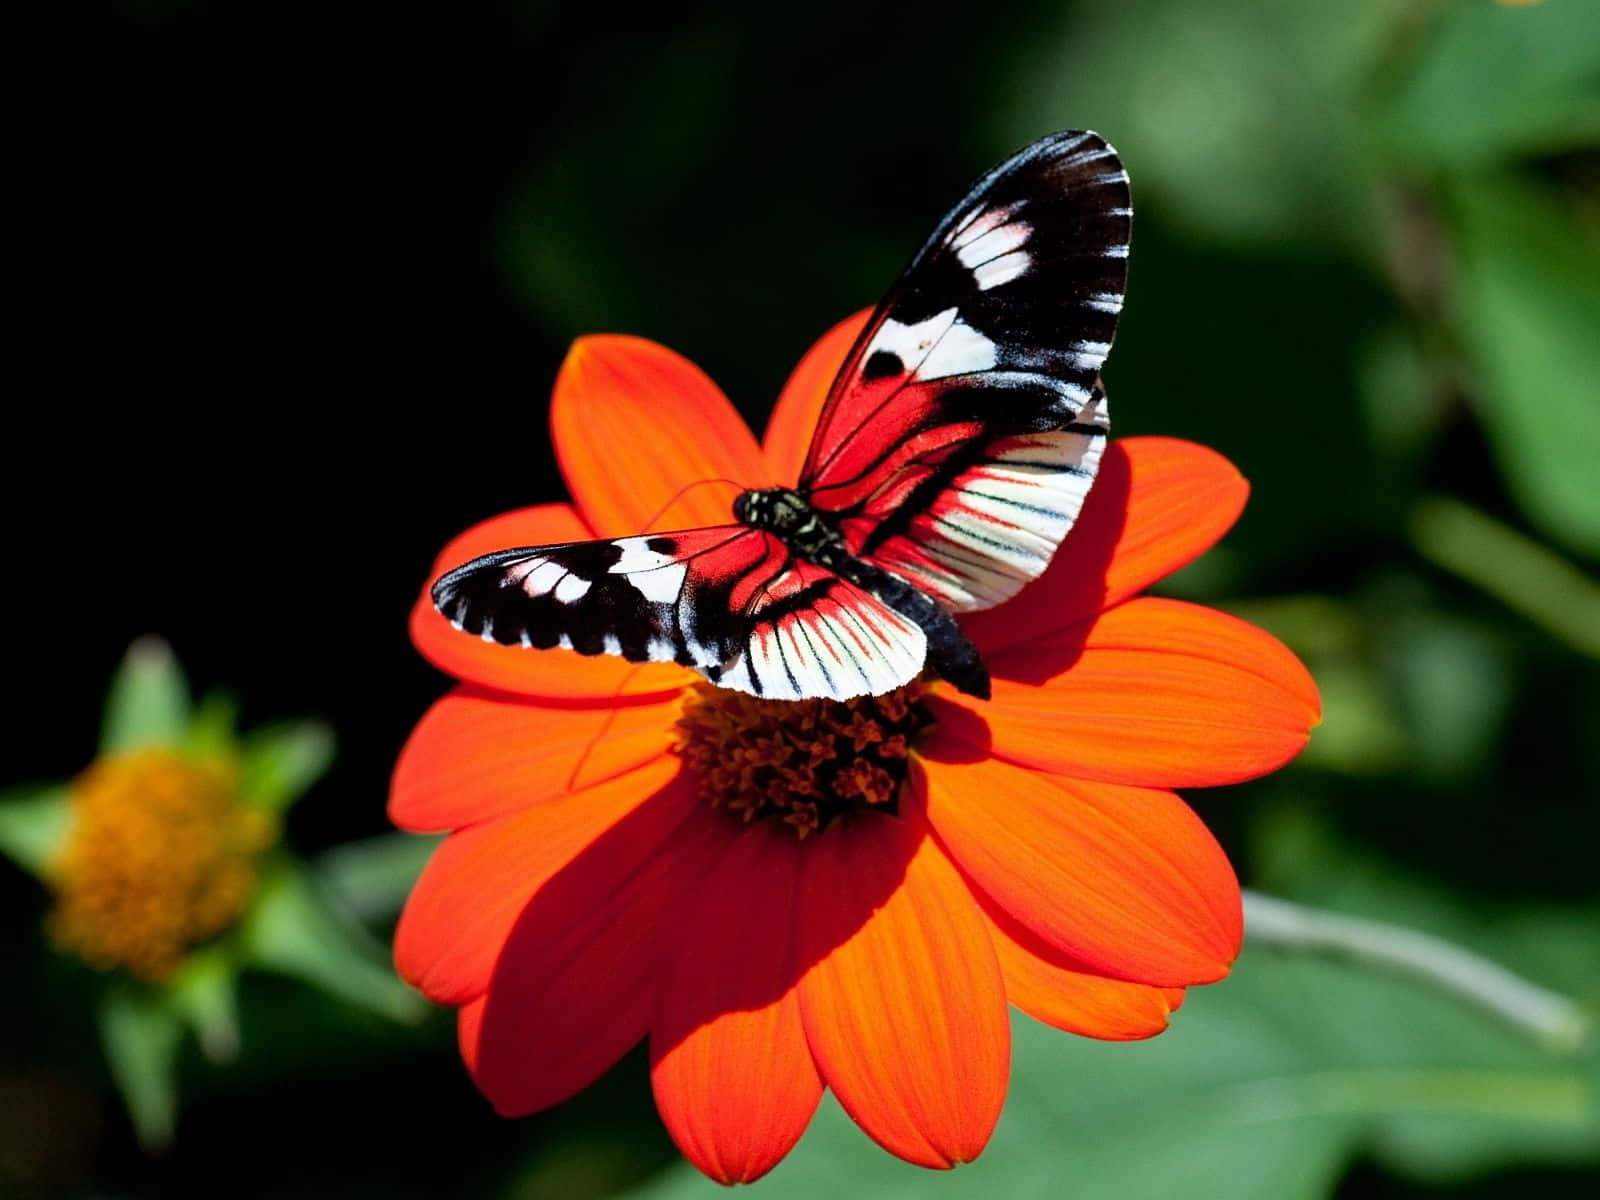 "A butterfly enjoys a vibrant flower"